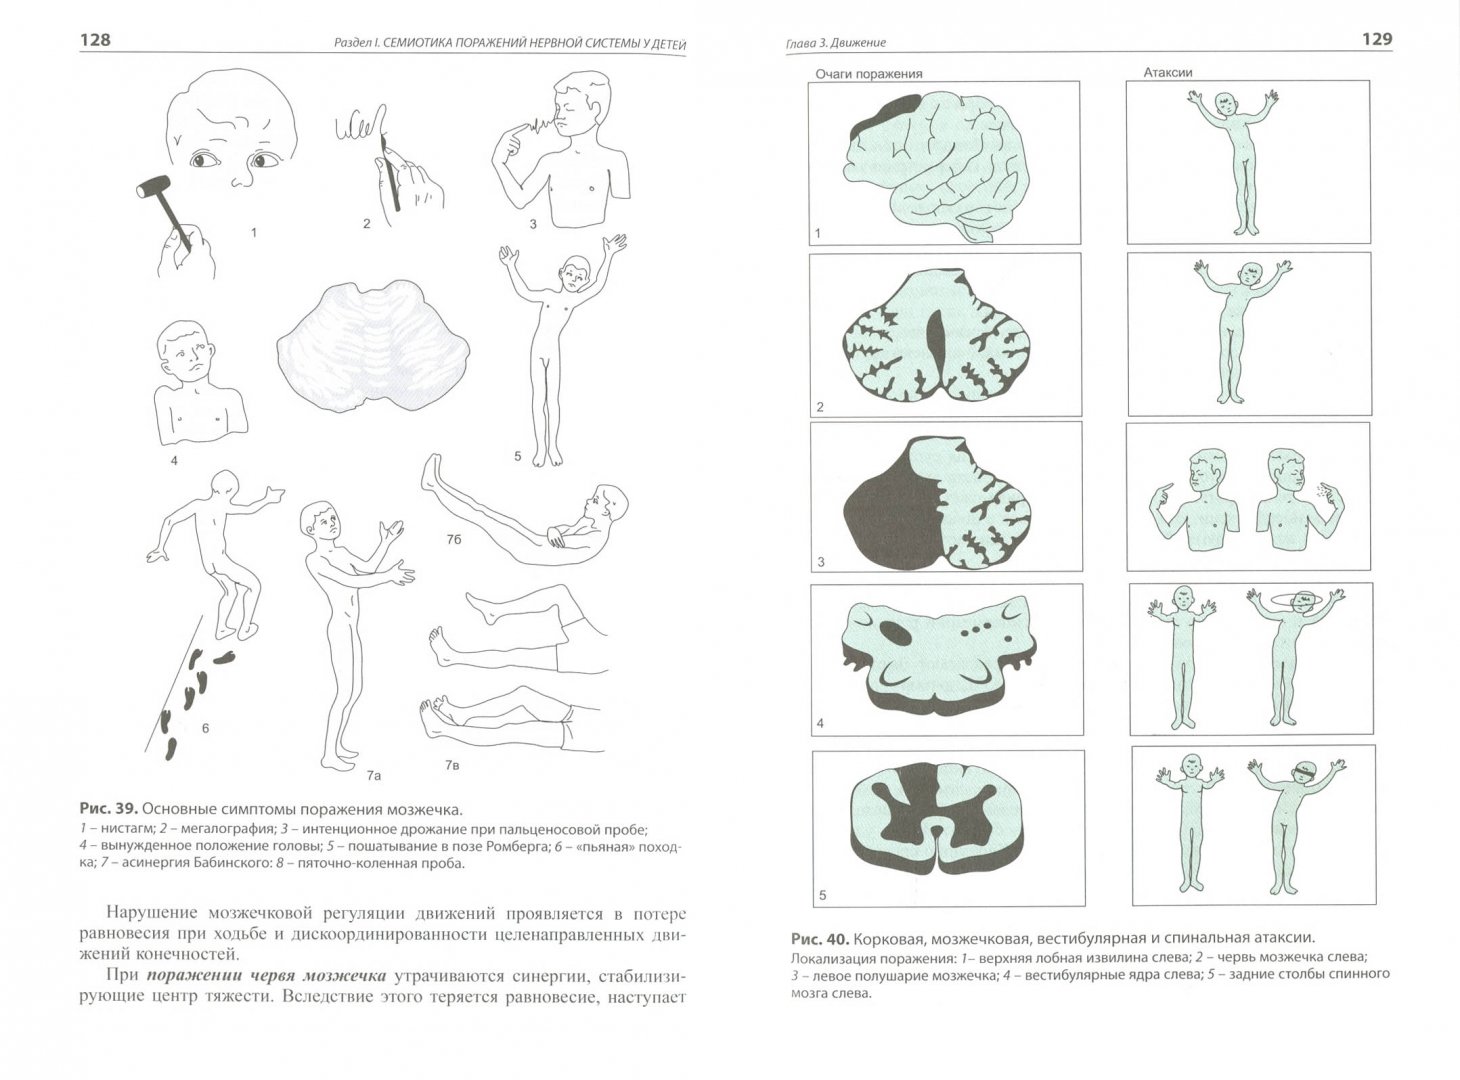 Иллюстрация 1 из 3 для Детская неврология - Левон Бадалян | Лабиринт - книги. Источник: Лабиринт